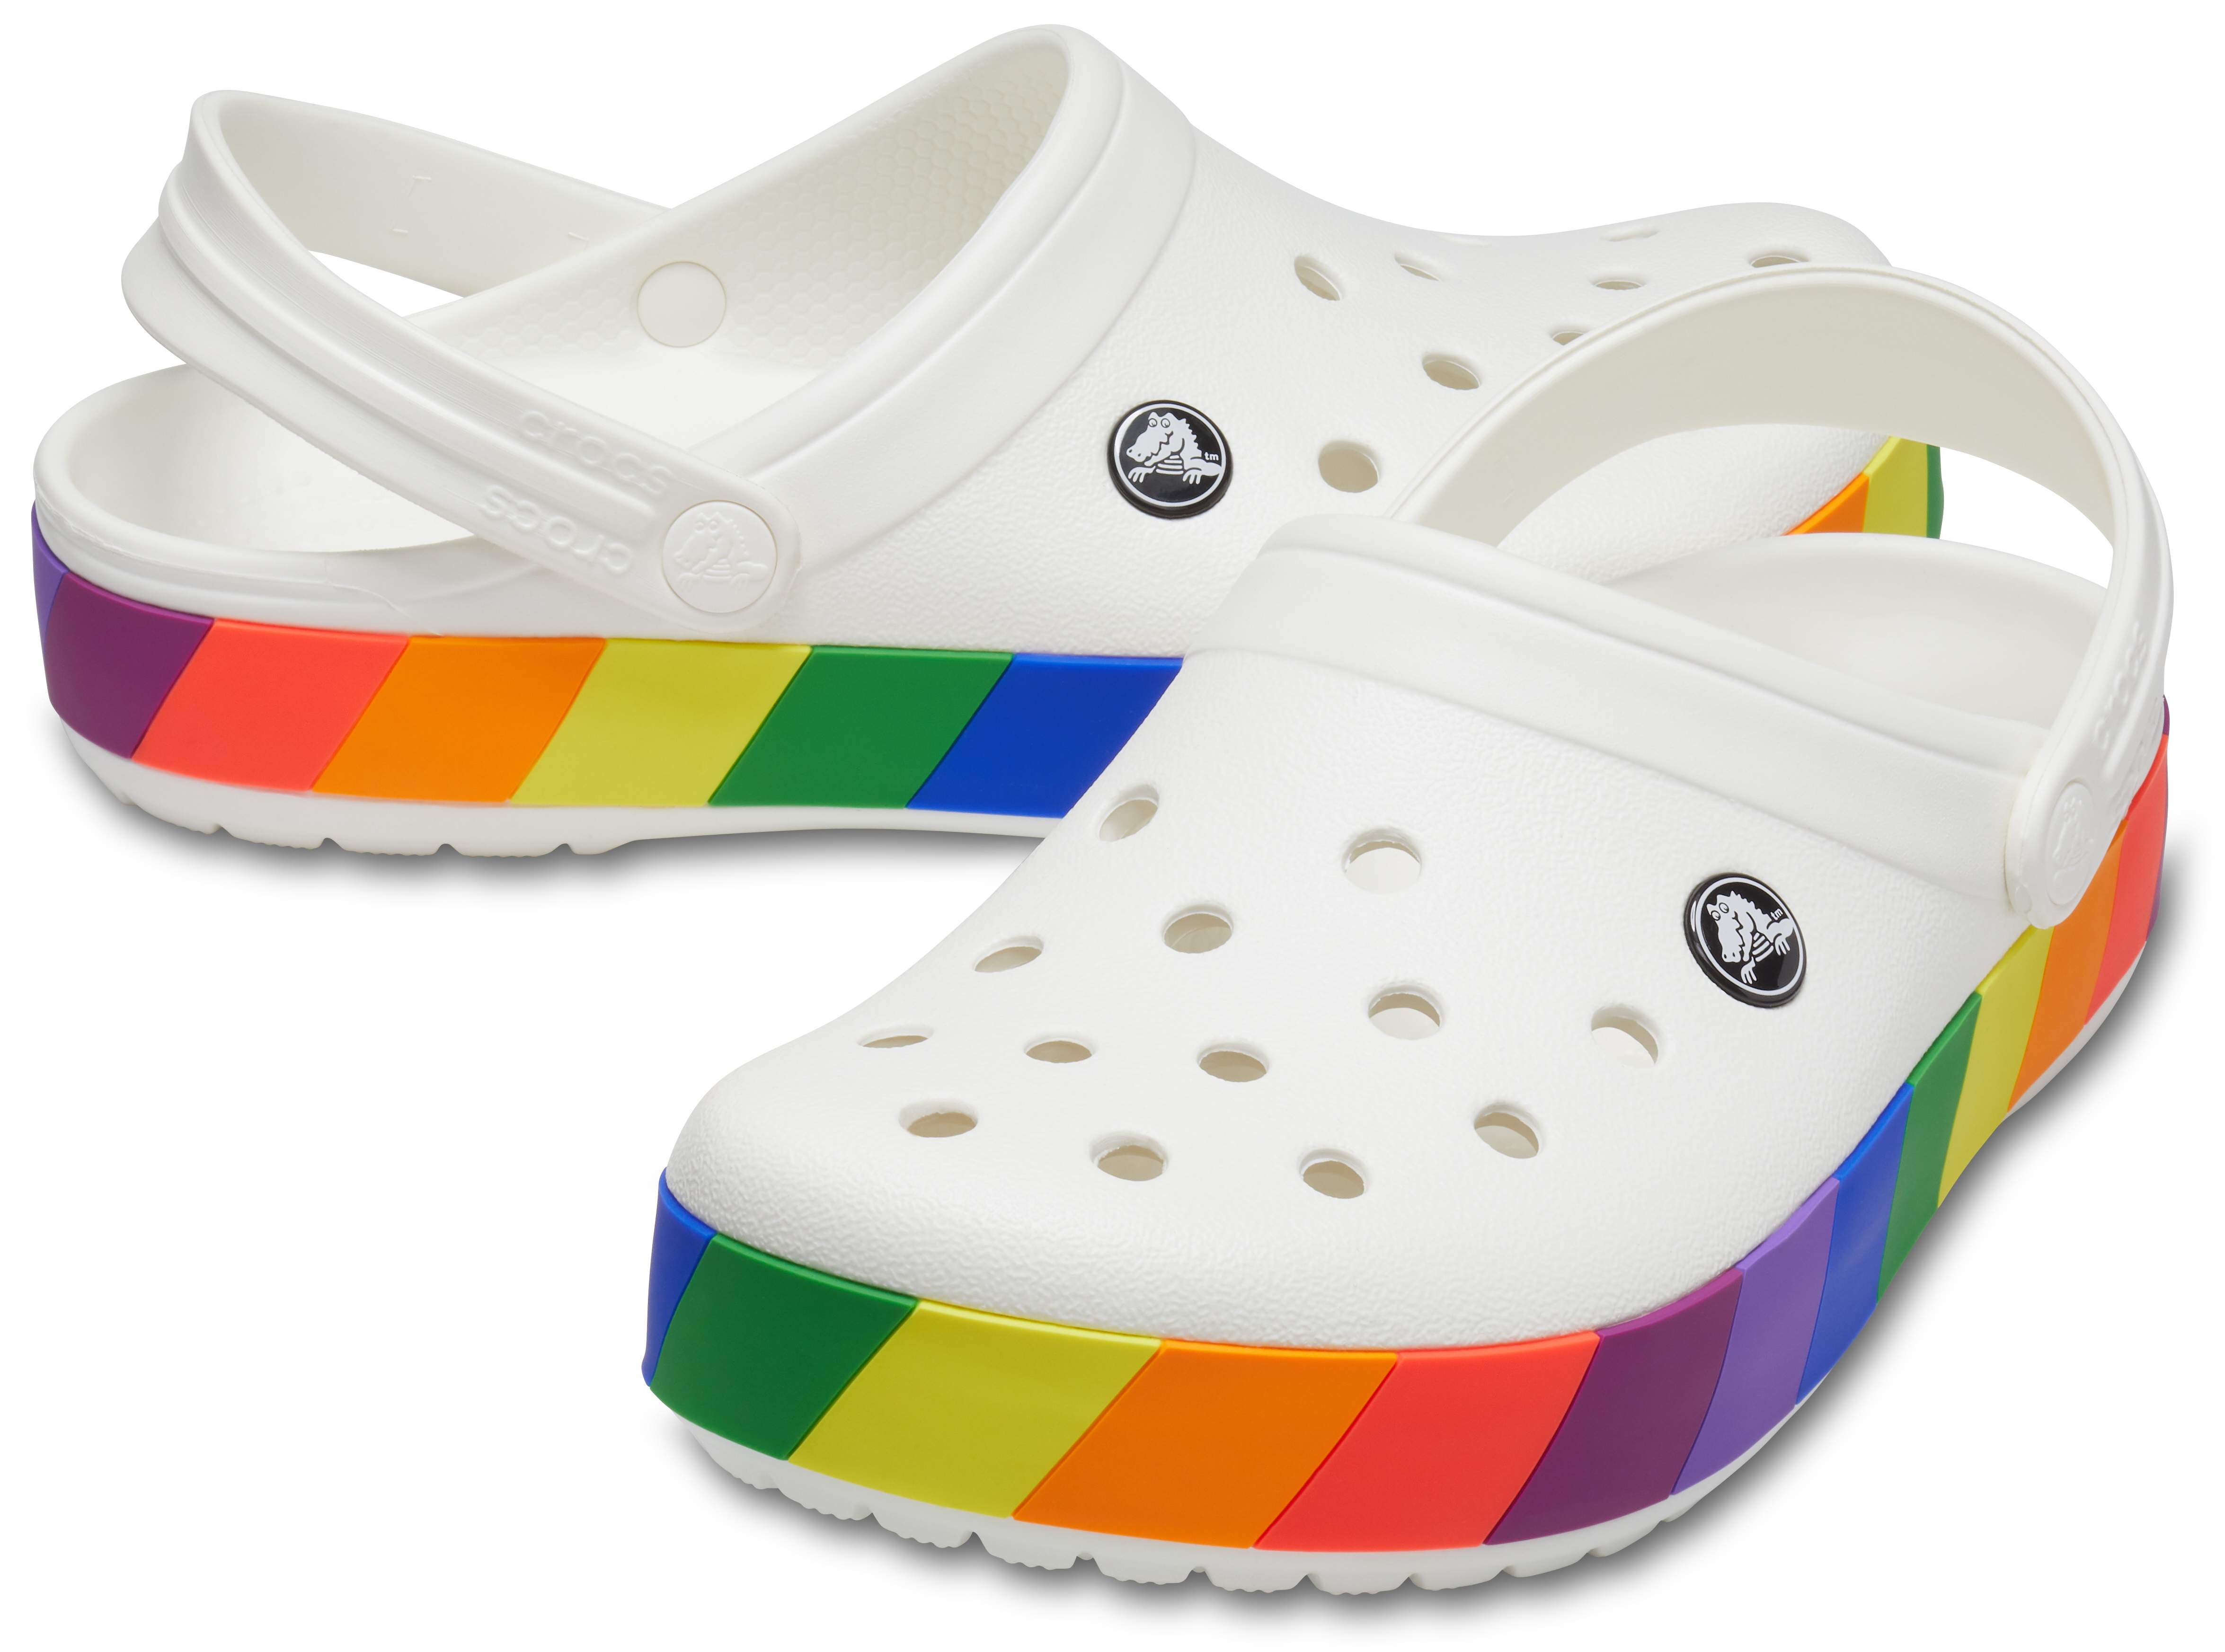 rainbow crocs shoes